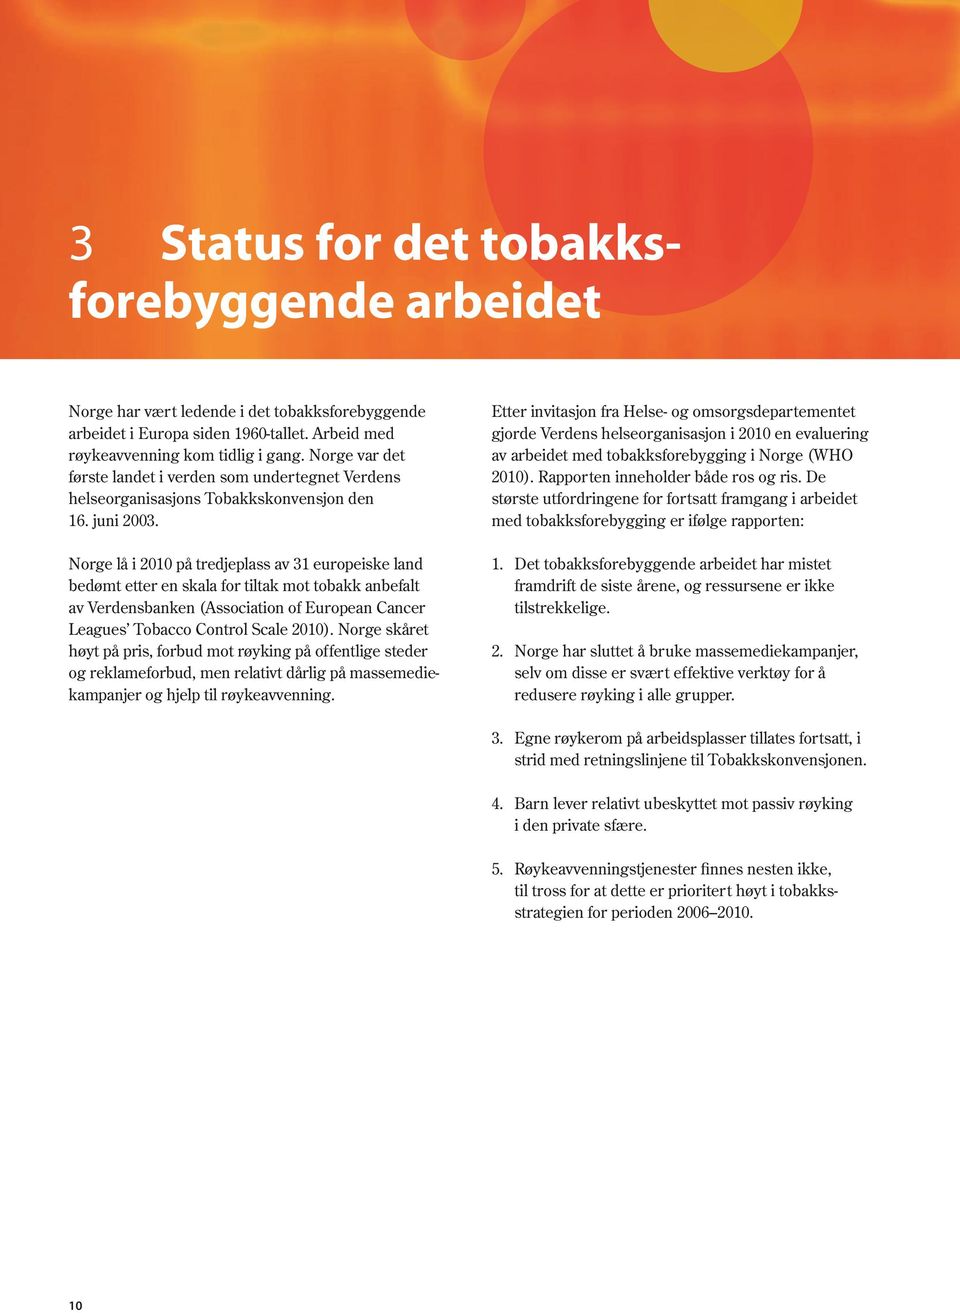 Norge lå i 2010 på tredjeplass av 31 europeiske land bedømt etter en skala for tiltak mot tobakk anbefalt av Verdensbanken (Association of European Cancer Leagues Tobacco Control Scale 2010).